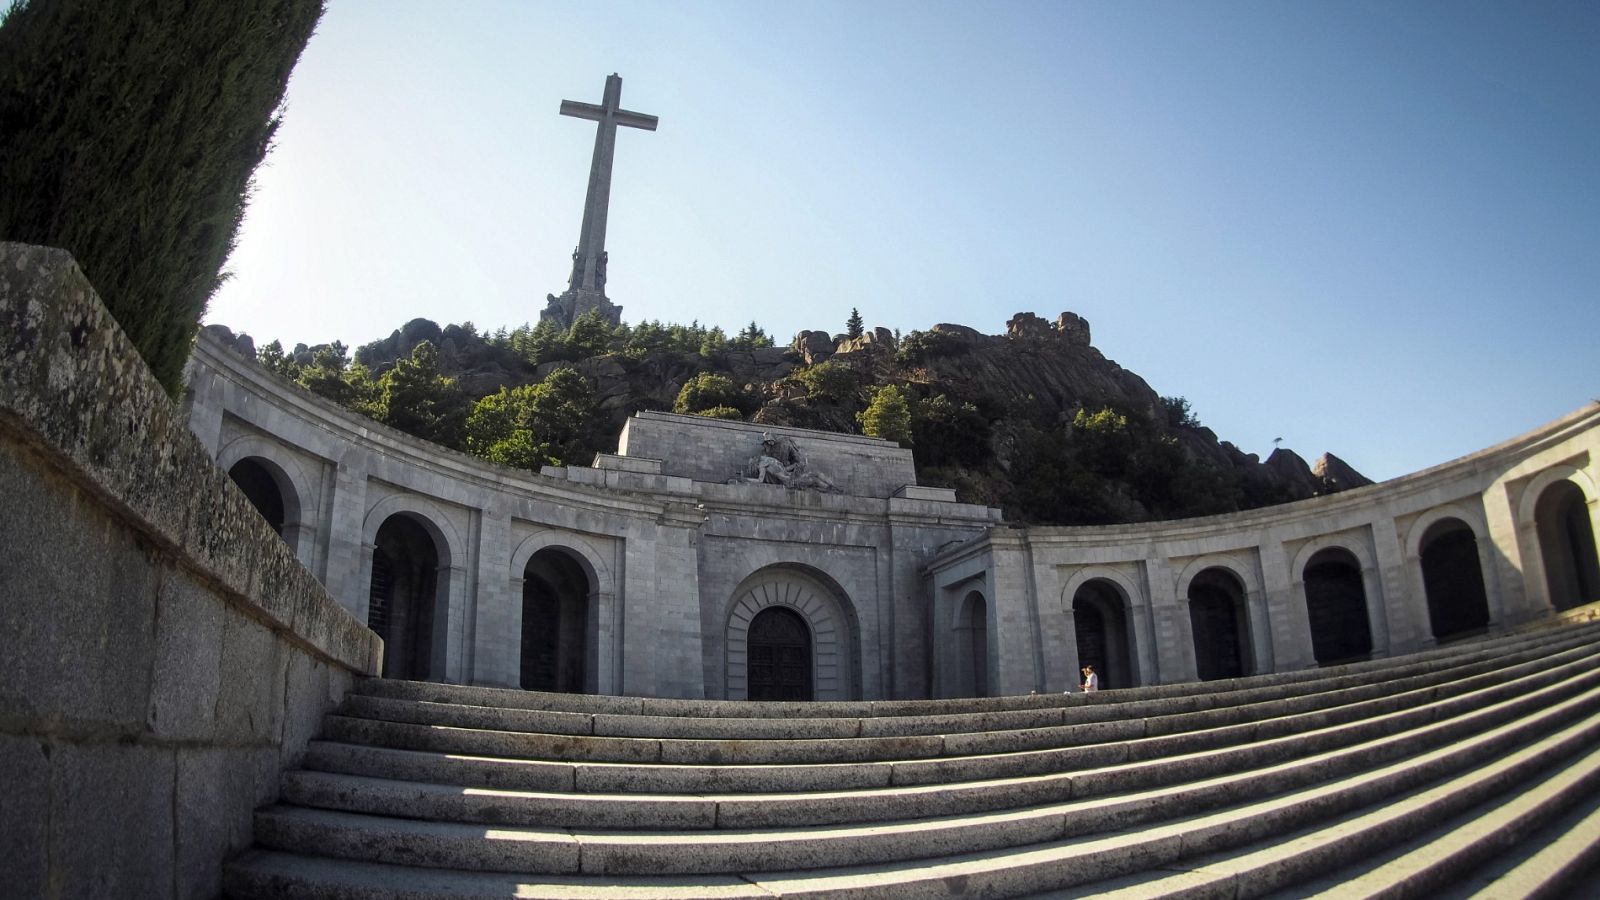 Vista de la fachada principal de la basílica del Valle de los Caídos, con la cruz al fondo